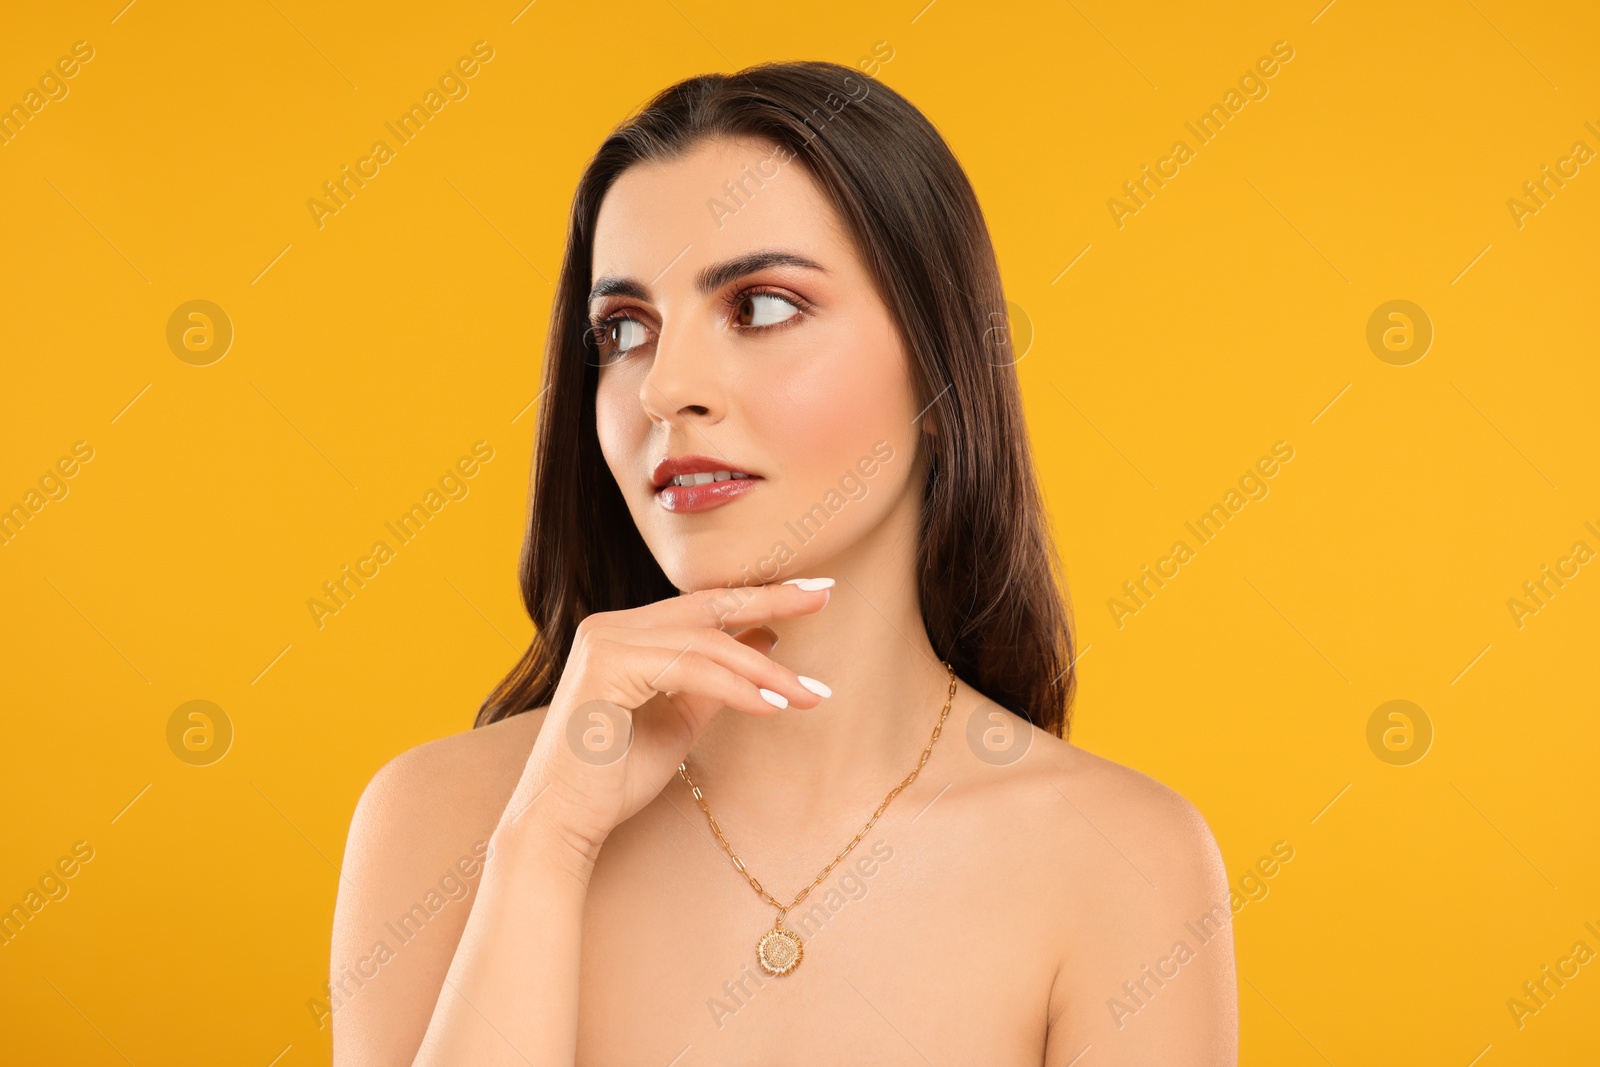 Photo of Beautiful woman with elegant necklace on orange background